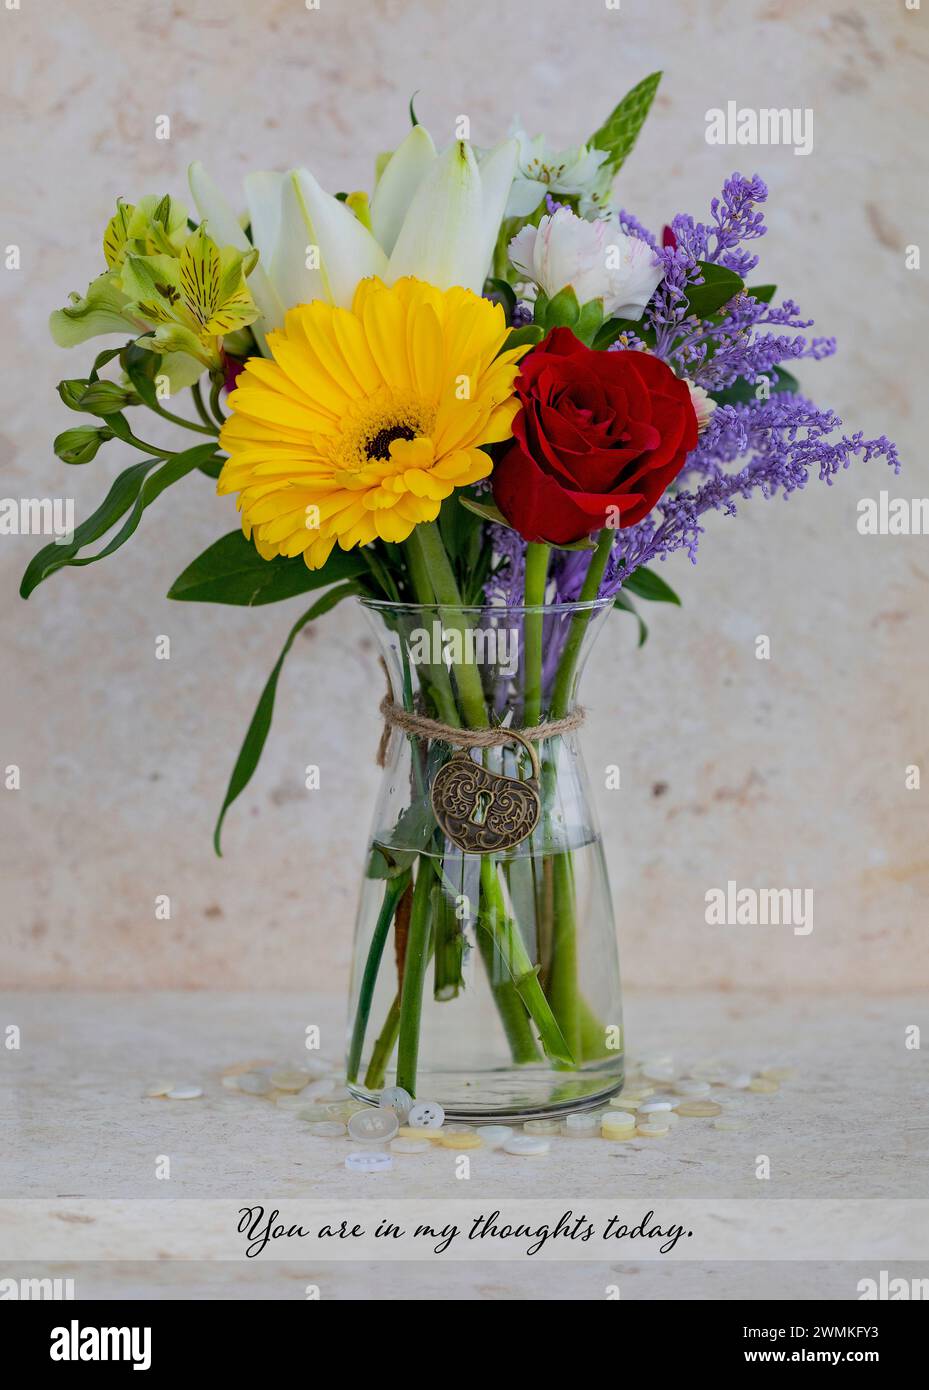 Kleiner, farbenfroher Blumenstrauß in einer Glasvase mit einer durchdachten Botschaft im Text und einem herzförmigen, dekorativen Charme, der um den Hals gebunden ist; Studio Shot Stockfoto